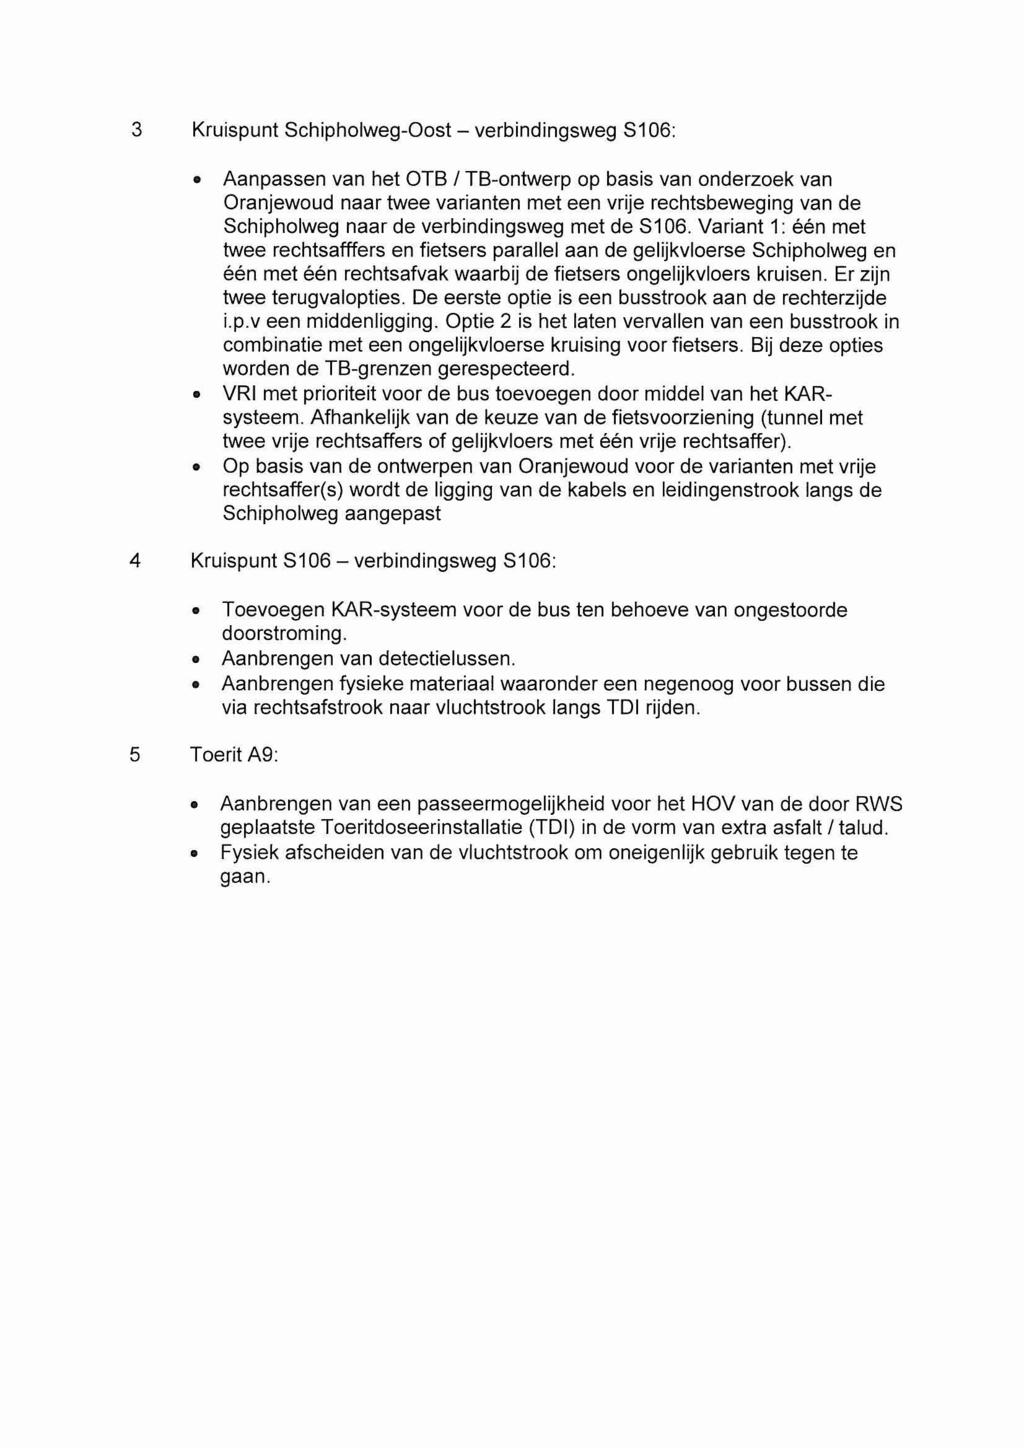 3 Kruispunt Schipholweg-Oost - verbindingsweg S106: Aanpassen van het OTB 1 TB-ontwerp op basis van onderzoek van Oranjewoud naar twee varianten met een vrije rechtsbeweging van de Schipholweg naar